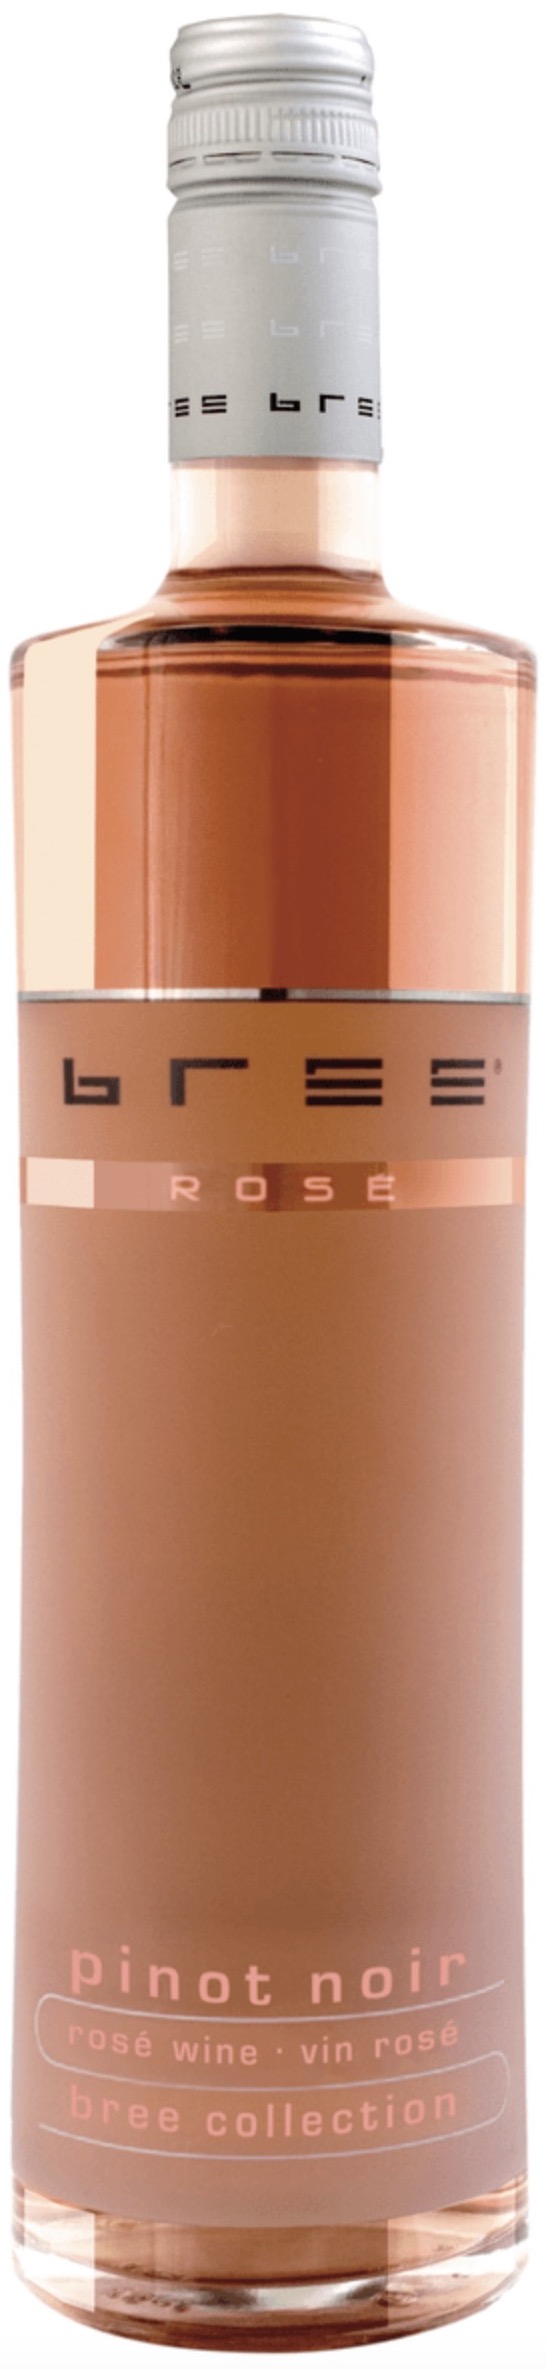 Bree Pinot Noir Rose halbtrocken 12% vol. 0,75L